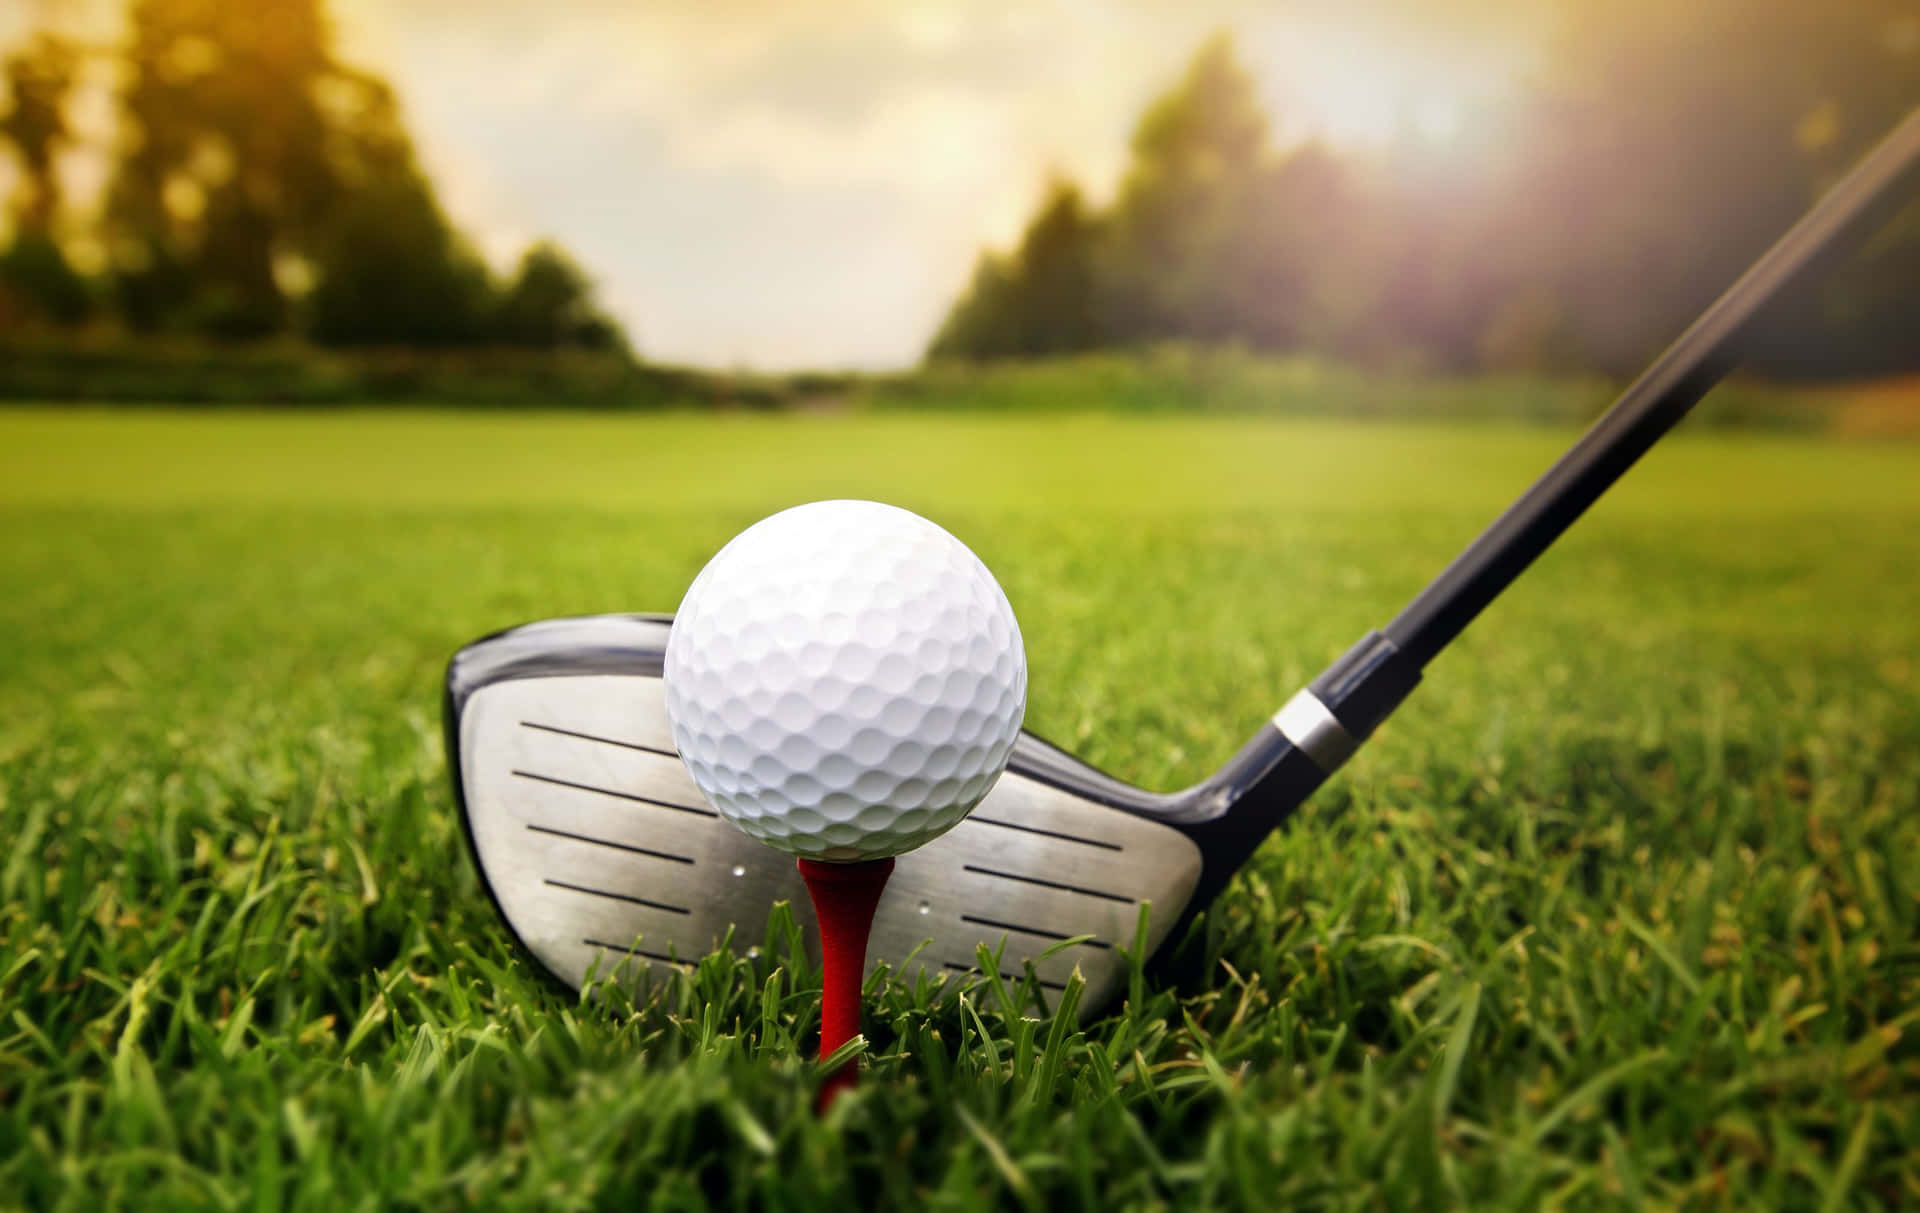 Attvara En Golfspelare Innebär Att Ha En Speciell Anknytning Till Dina Klubbor.